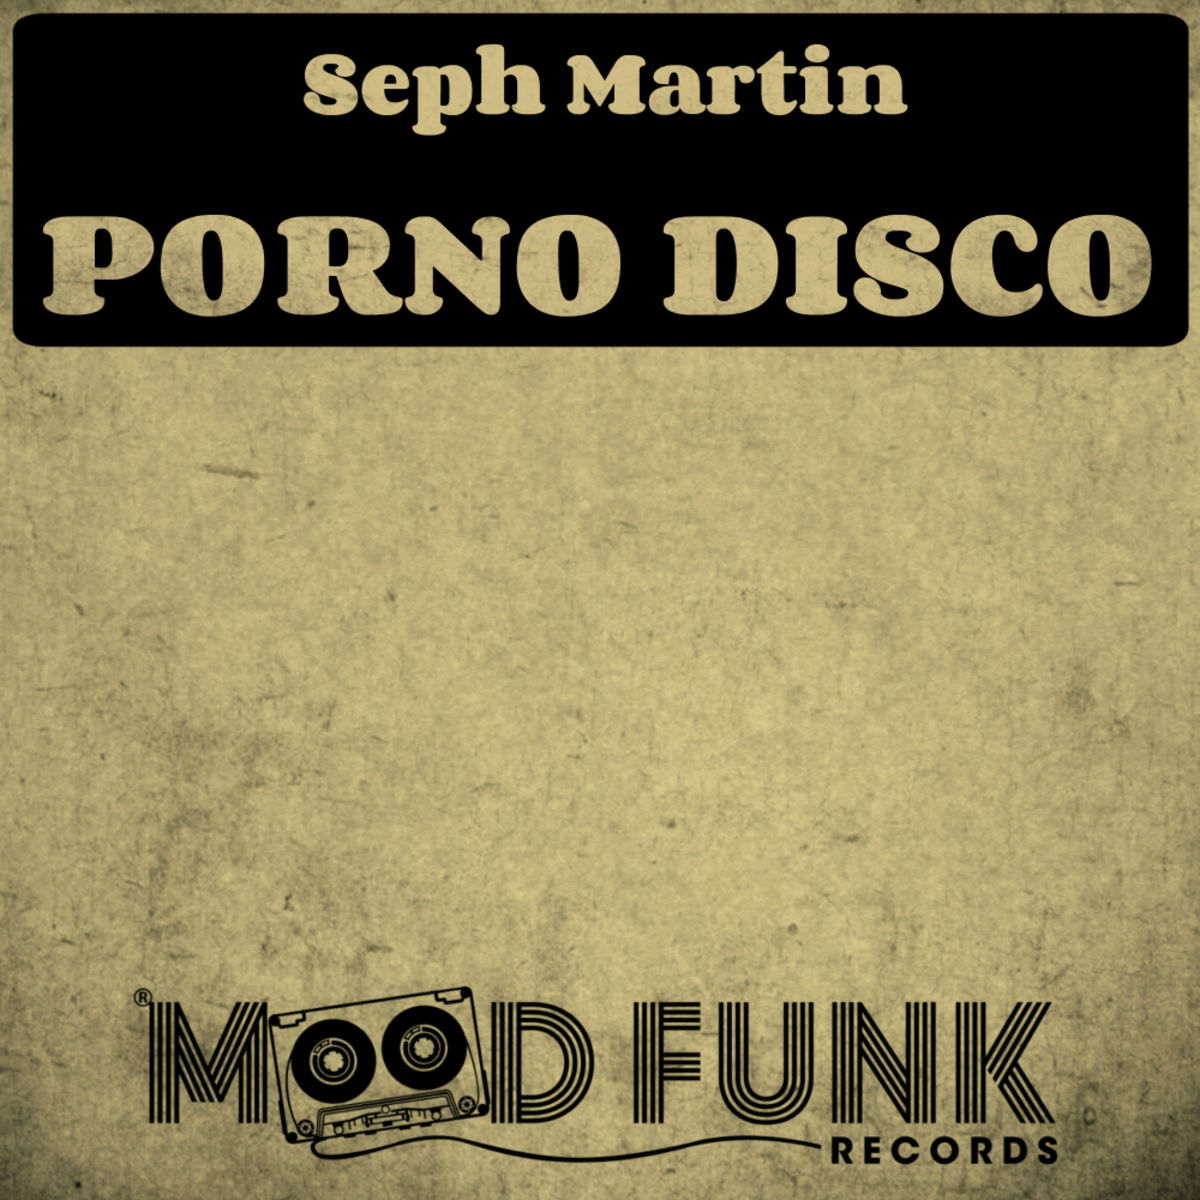 Seph Martin - Porno Disco / Mood Funk Records